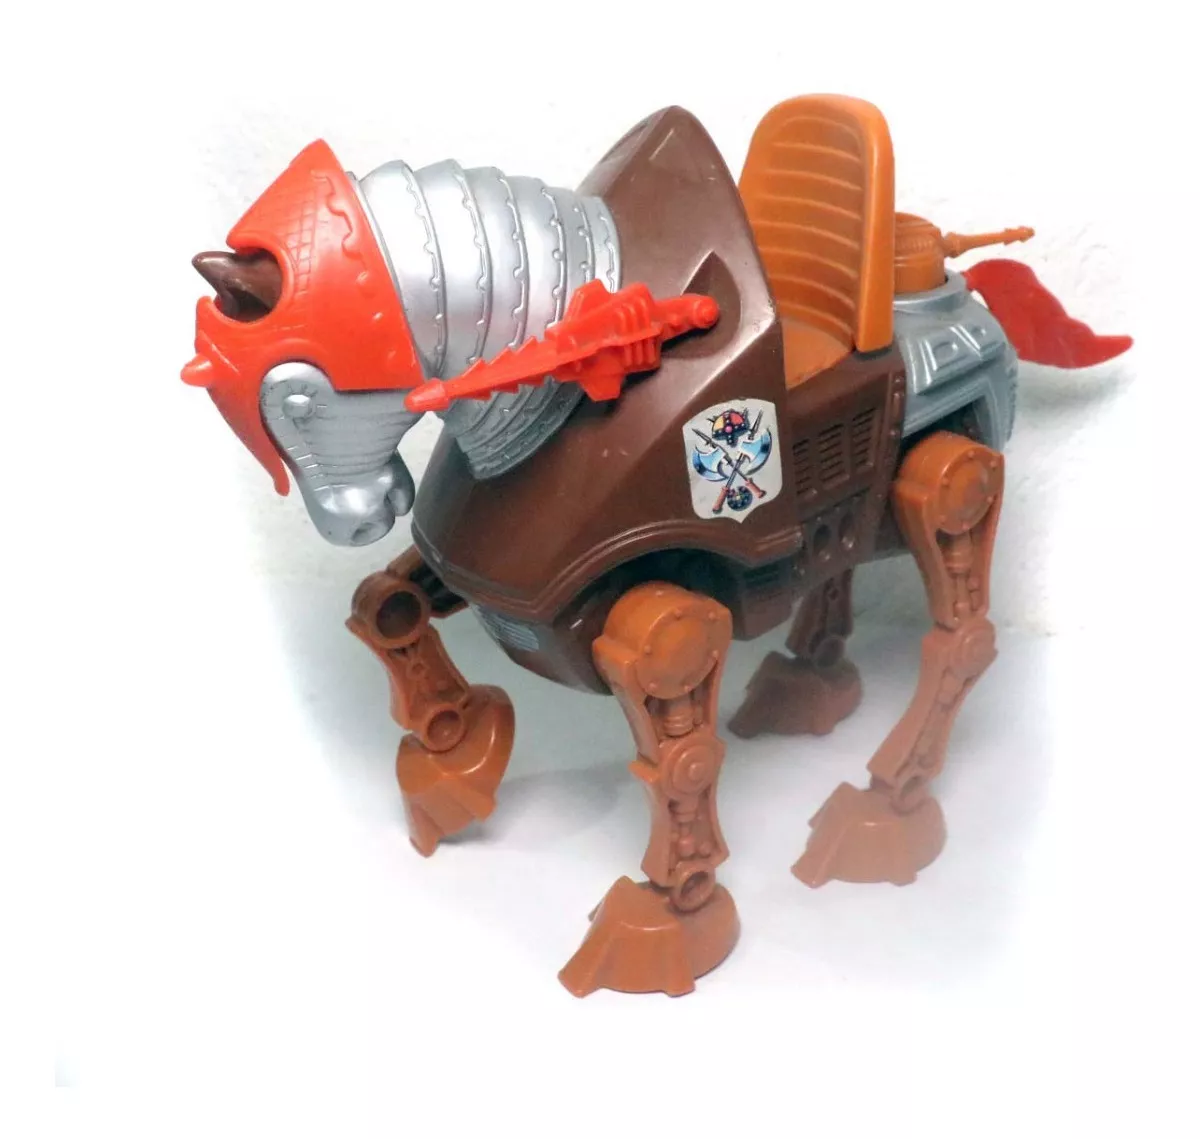 Boneco Cavalo Stridor Gladiador He-man Motu Completo Anos 80